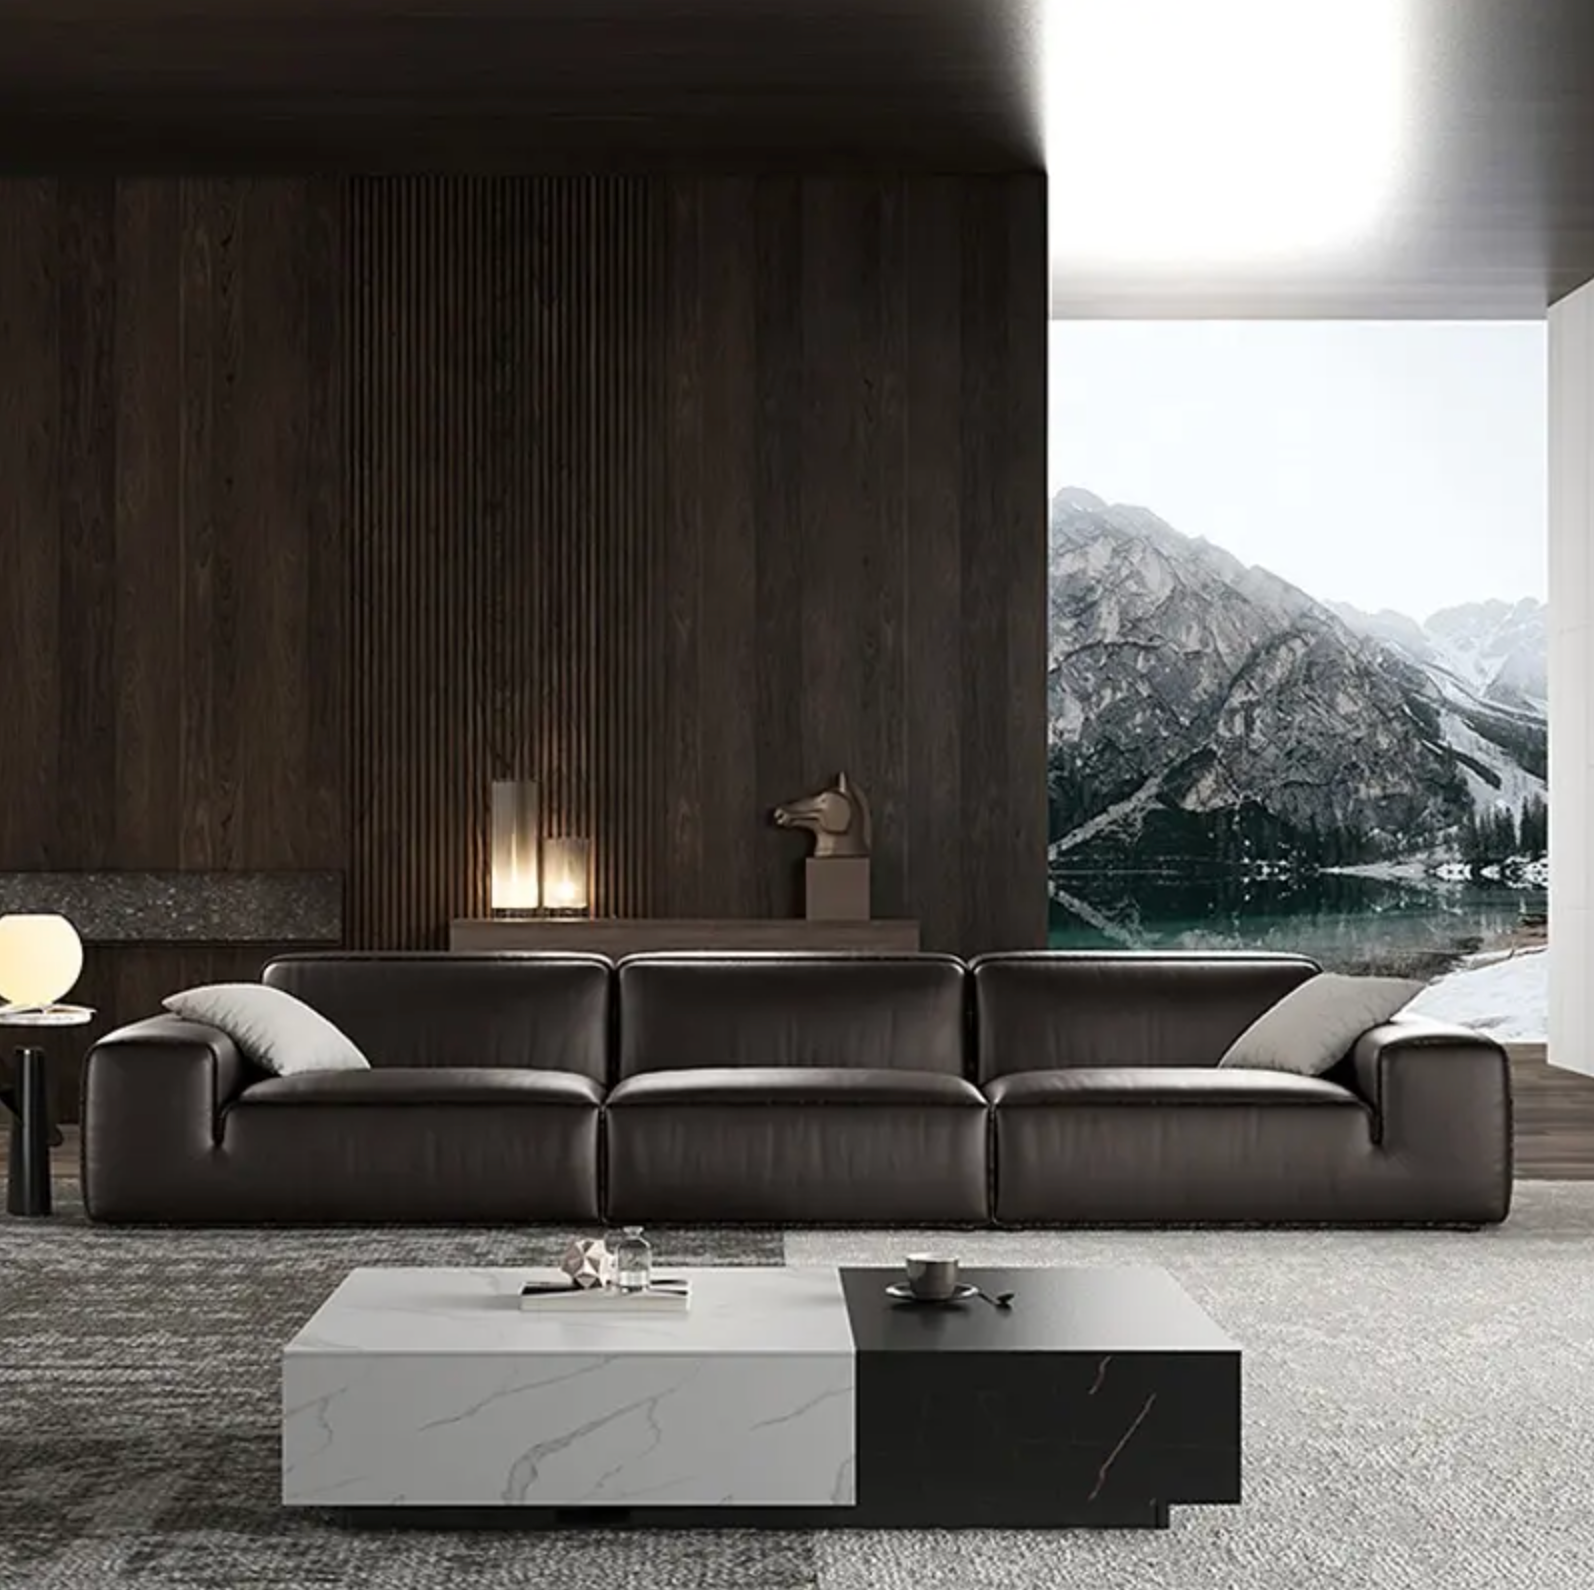 Maverick Sofa